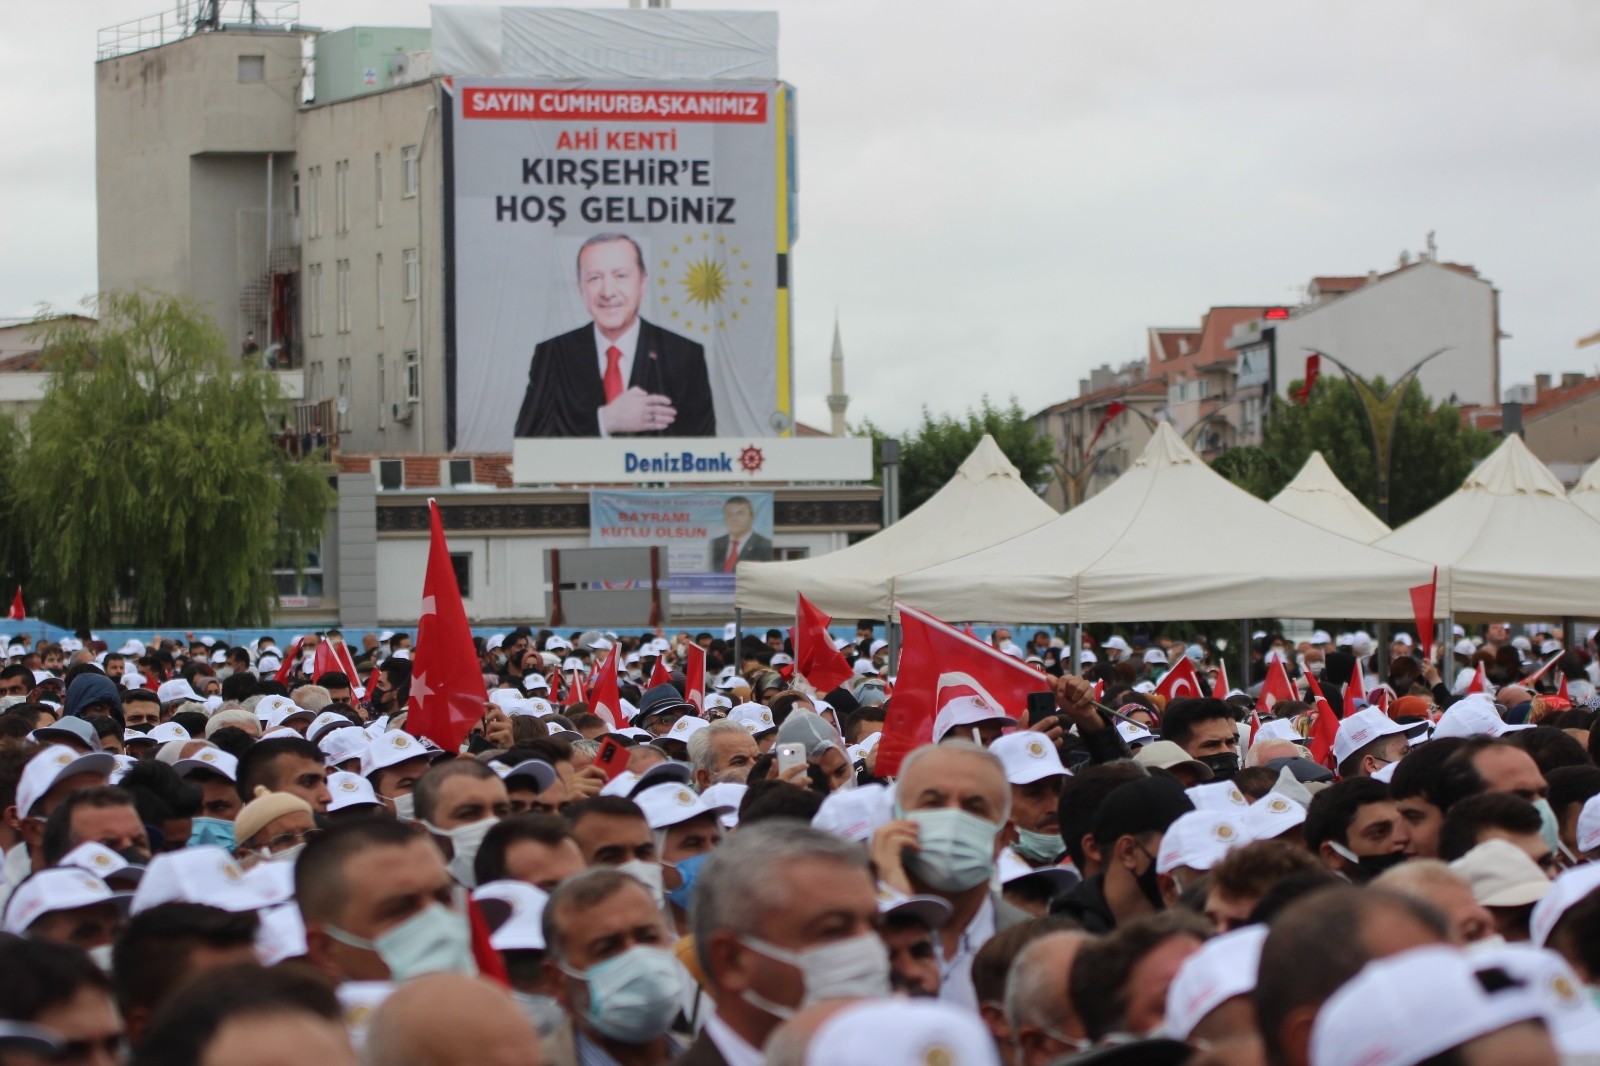 Kırşehir’de Erdoğan heyecanı #kirsehir